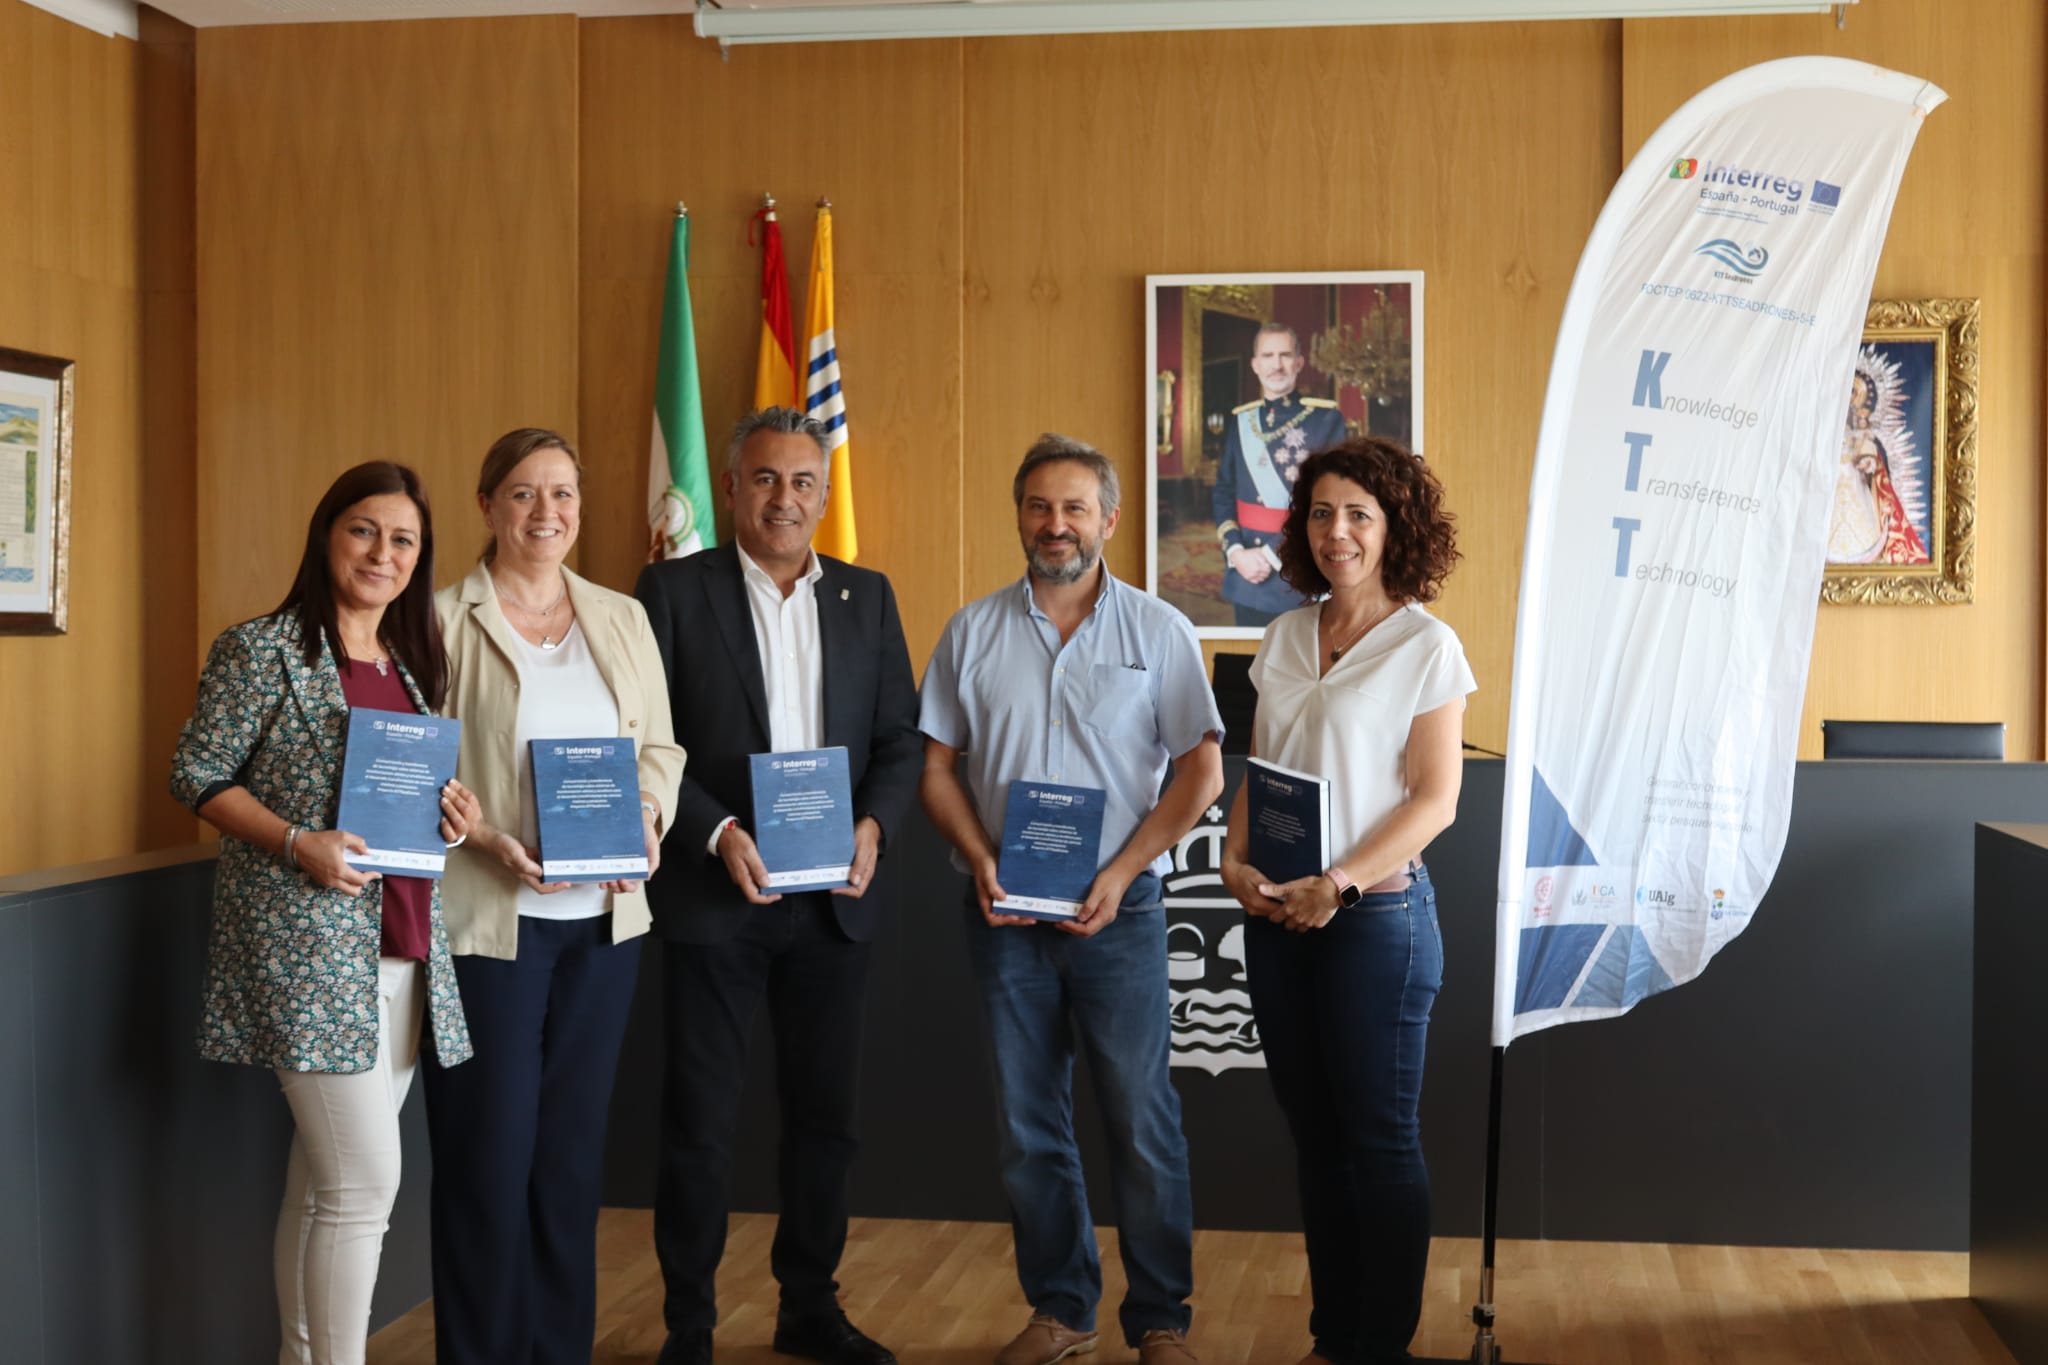 Finaliza el proyecto kttseadrones llevado a cabo por el Ayuntamiento de Isla Cristina y las universidades de Huelva, Cádiz y el Algarve